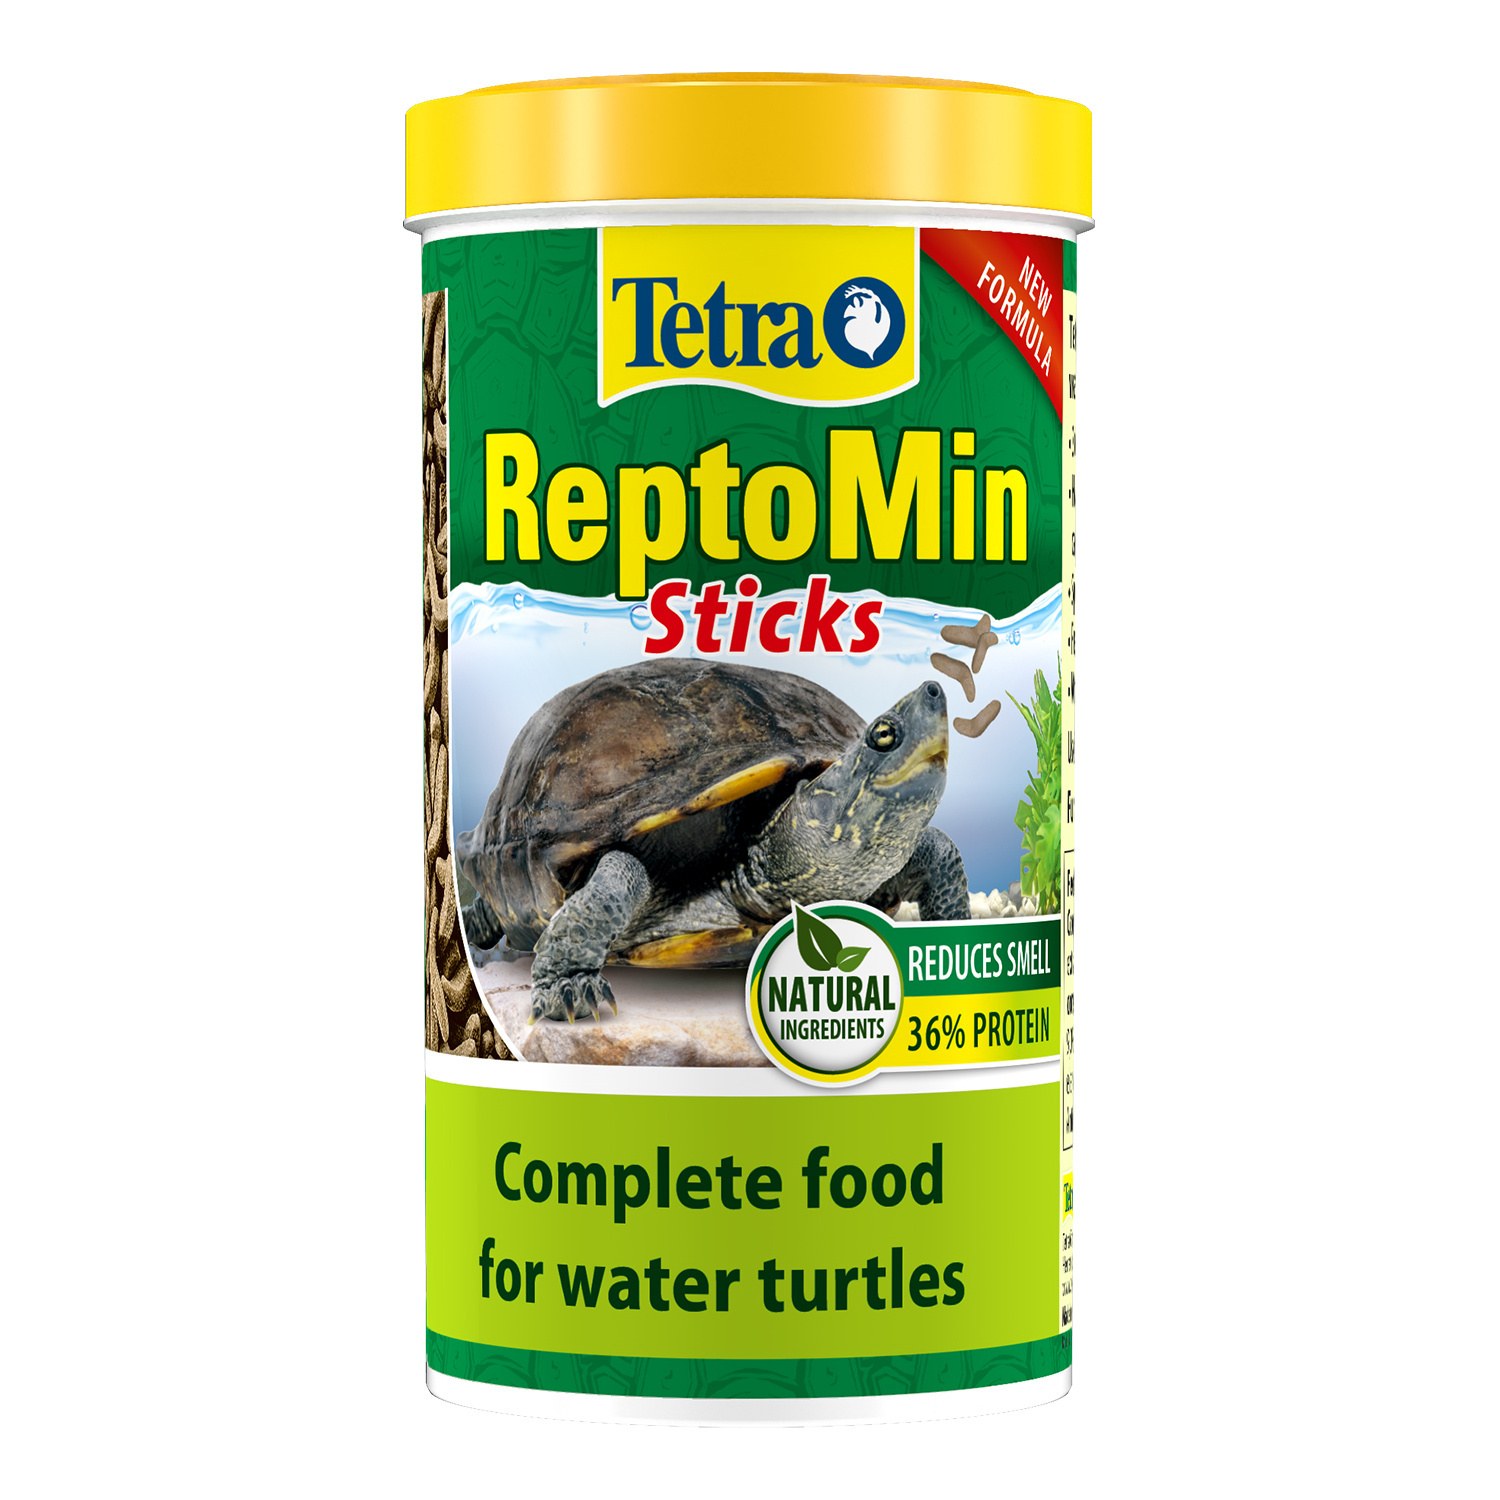 Tetra (корма) Tetra (корма) корм для водных черепах ReptoМin (130 г) tetra корма tetra корма корм для мальков до 1 см 30 г